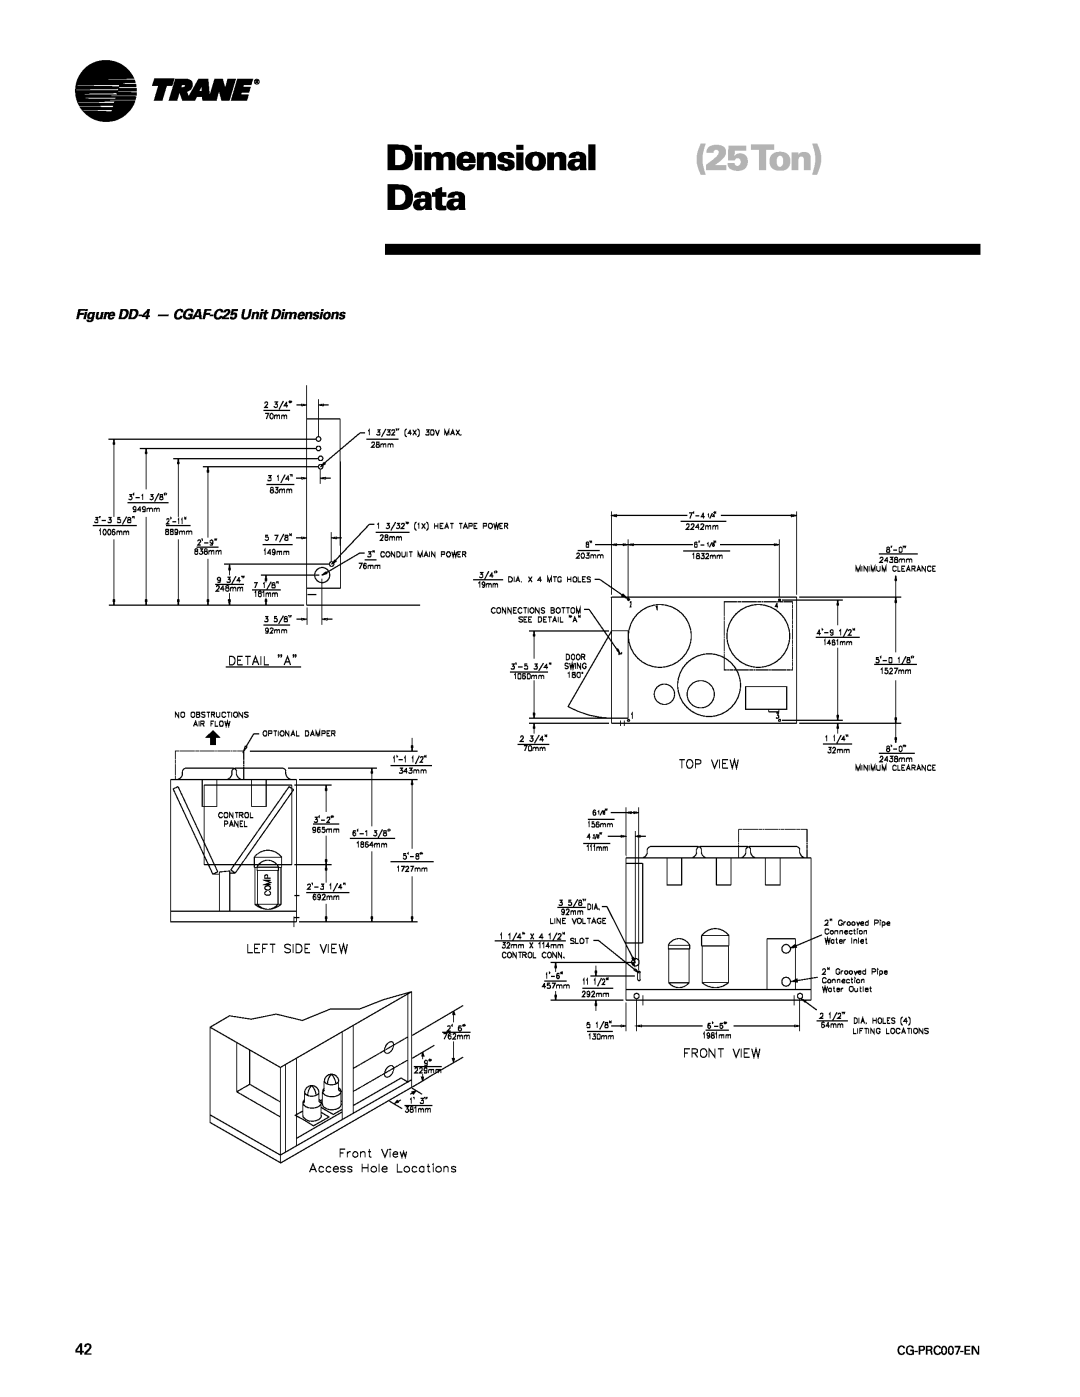 Trane CG-PRC007-EN manual Dimensional 25Ton Data, Figure DD-4- CGAF-C25Unit Dimensions 